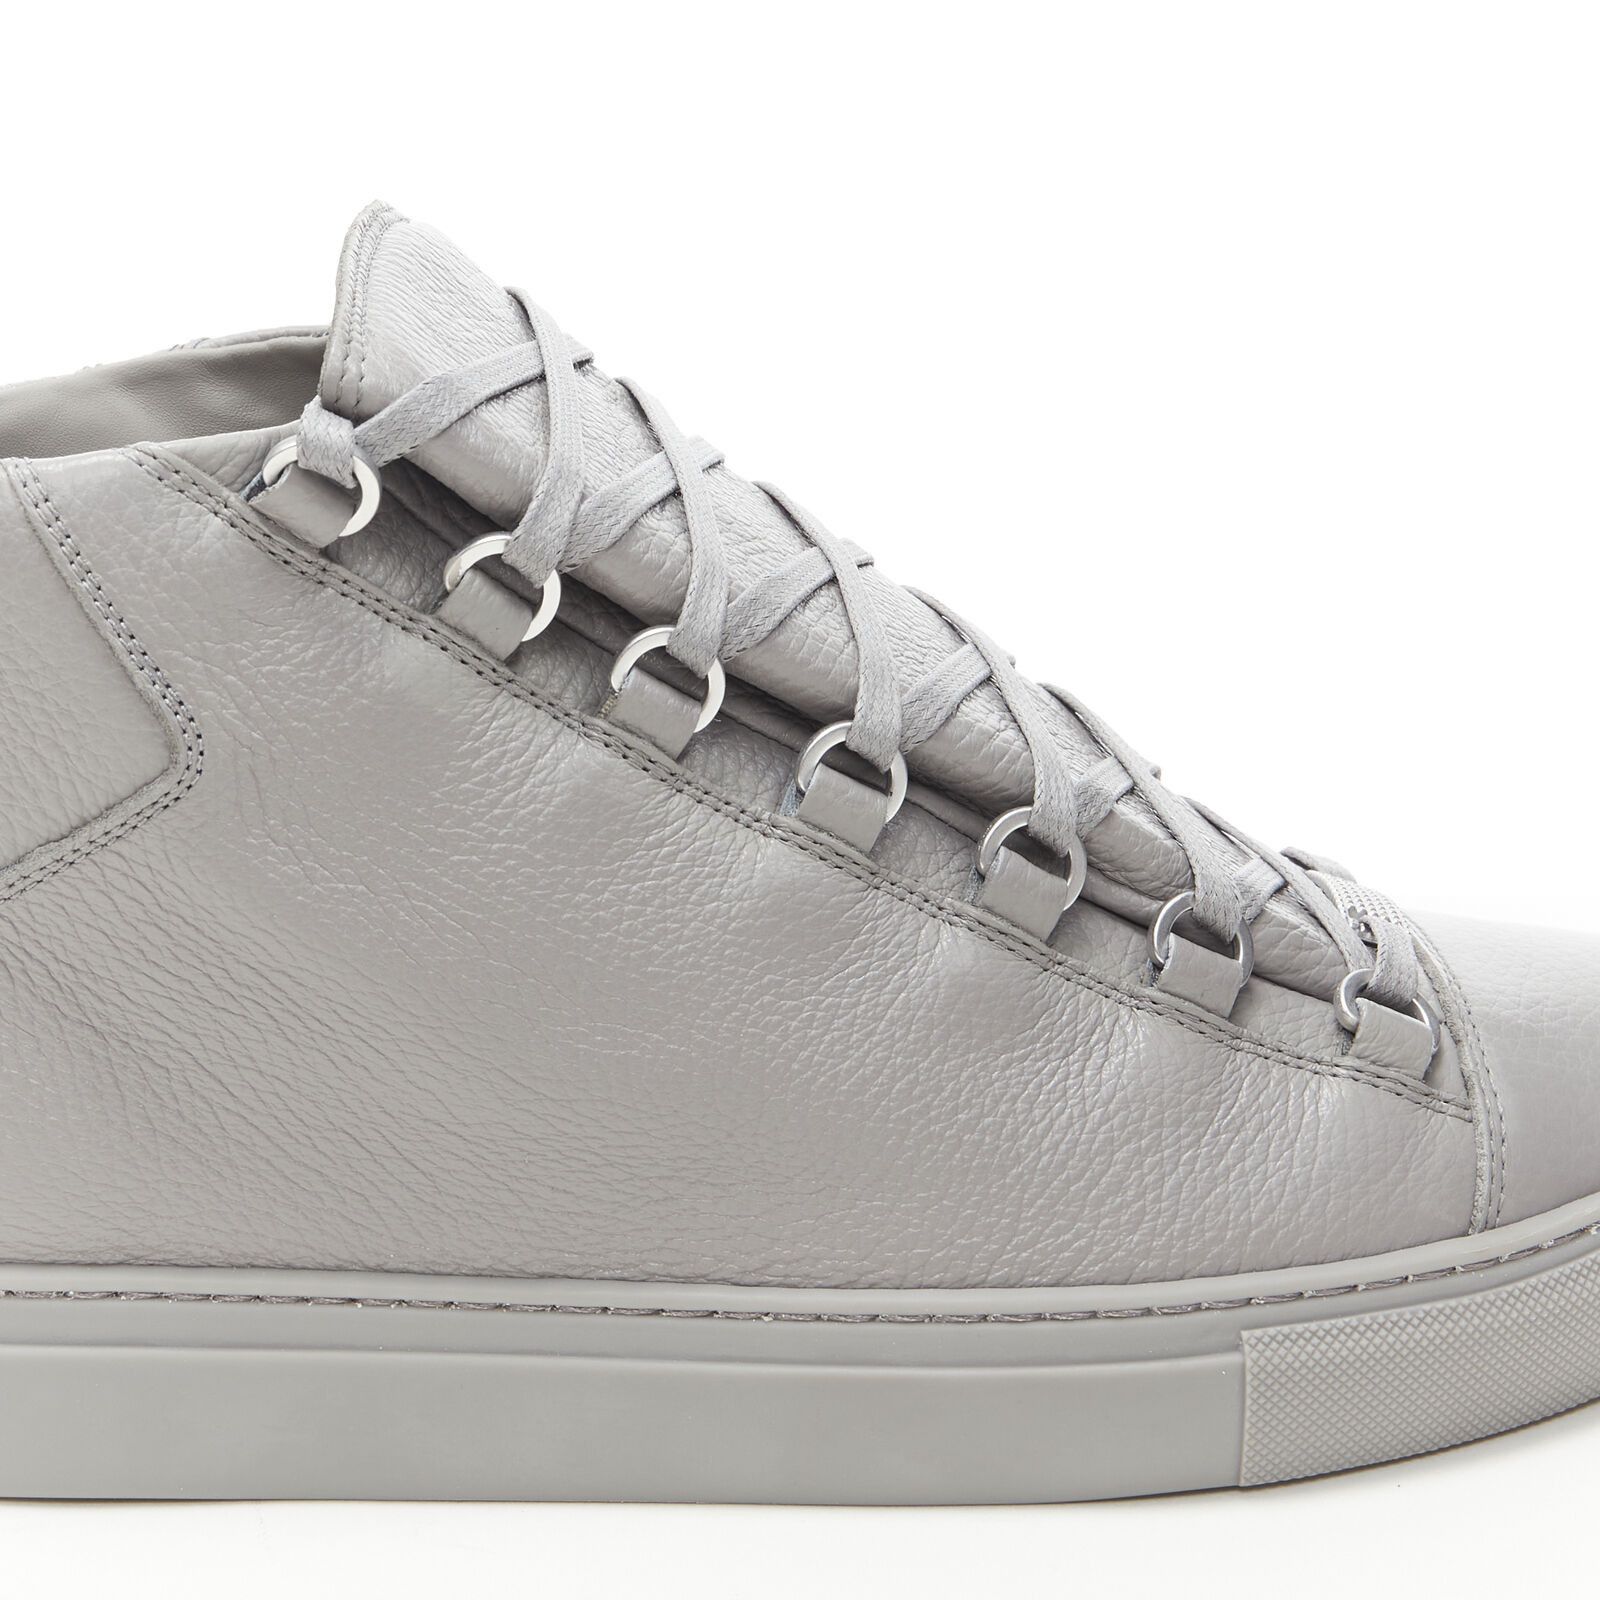 Balenciaga new Arena Grey Calf high top sneakers EU42 US10 TGAS/B00164 Size US 9 / EU 42 - 11 Preview